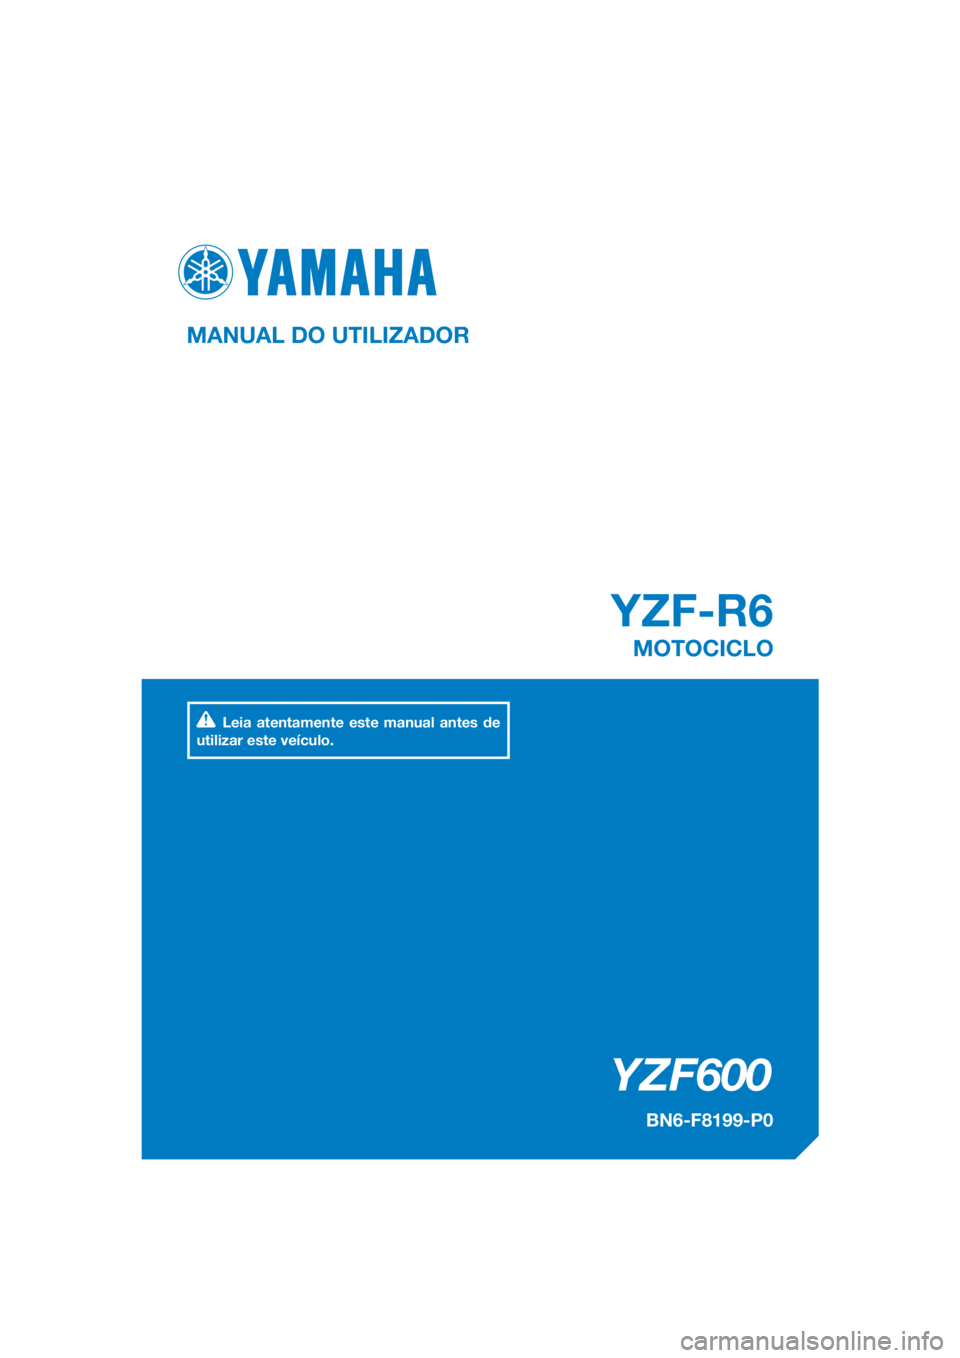 YAMAHA YZF-R6 2017  Manual de utilização (in Portuguese) DIC183
YZF600
YZF-R6
MANUAL DO UTILIZADOR
BN6-F8199-P0
MOTOCICLO
Leia atentamente este manual antes de 
utilizar este veículo.
[Portuguese  (P)] 